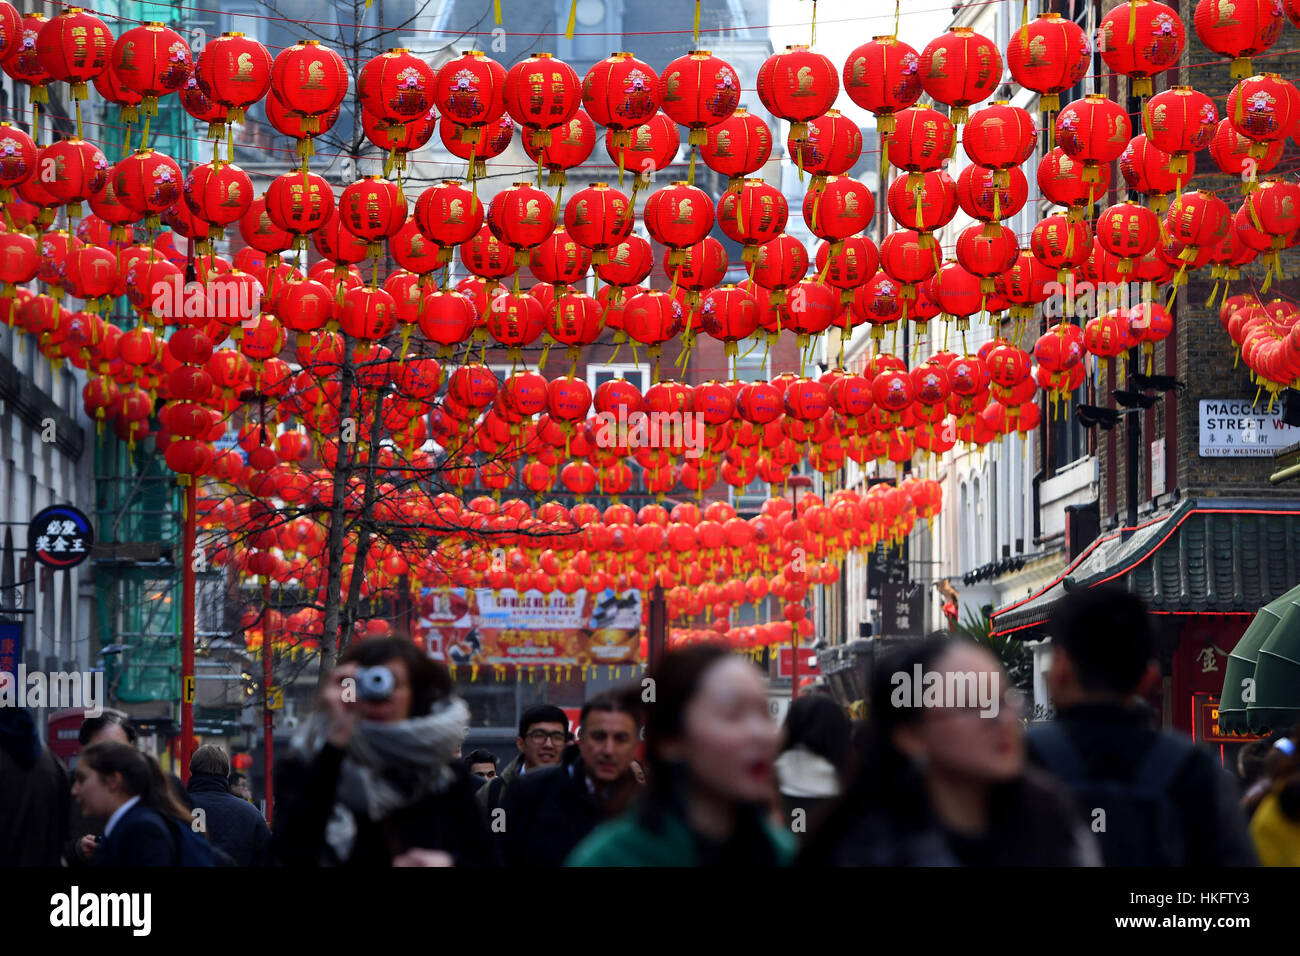 Lanterne sono infilate attraverso Gerrard Street a Chinatown, Londra, come i preparativi sono realizzati in vista del Capodanno cinese durante il fine settimana. Foto Stock